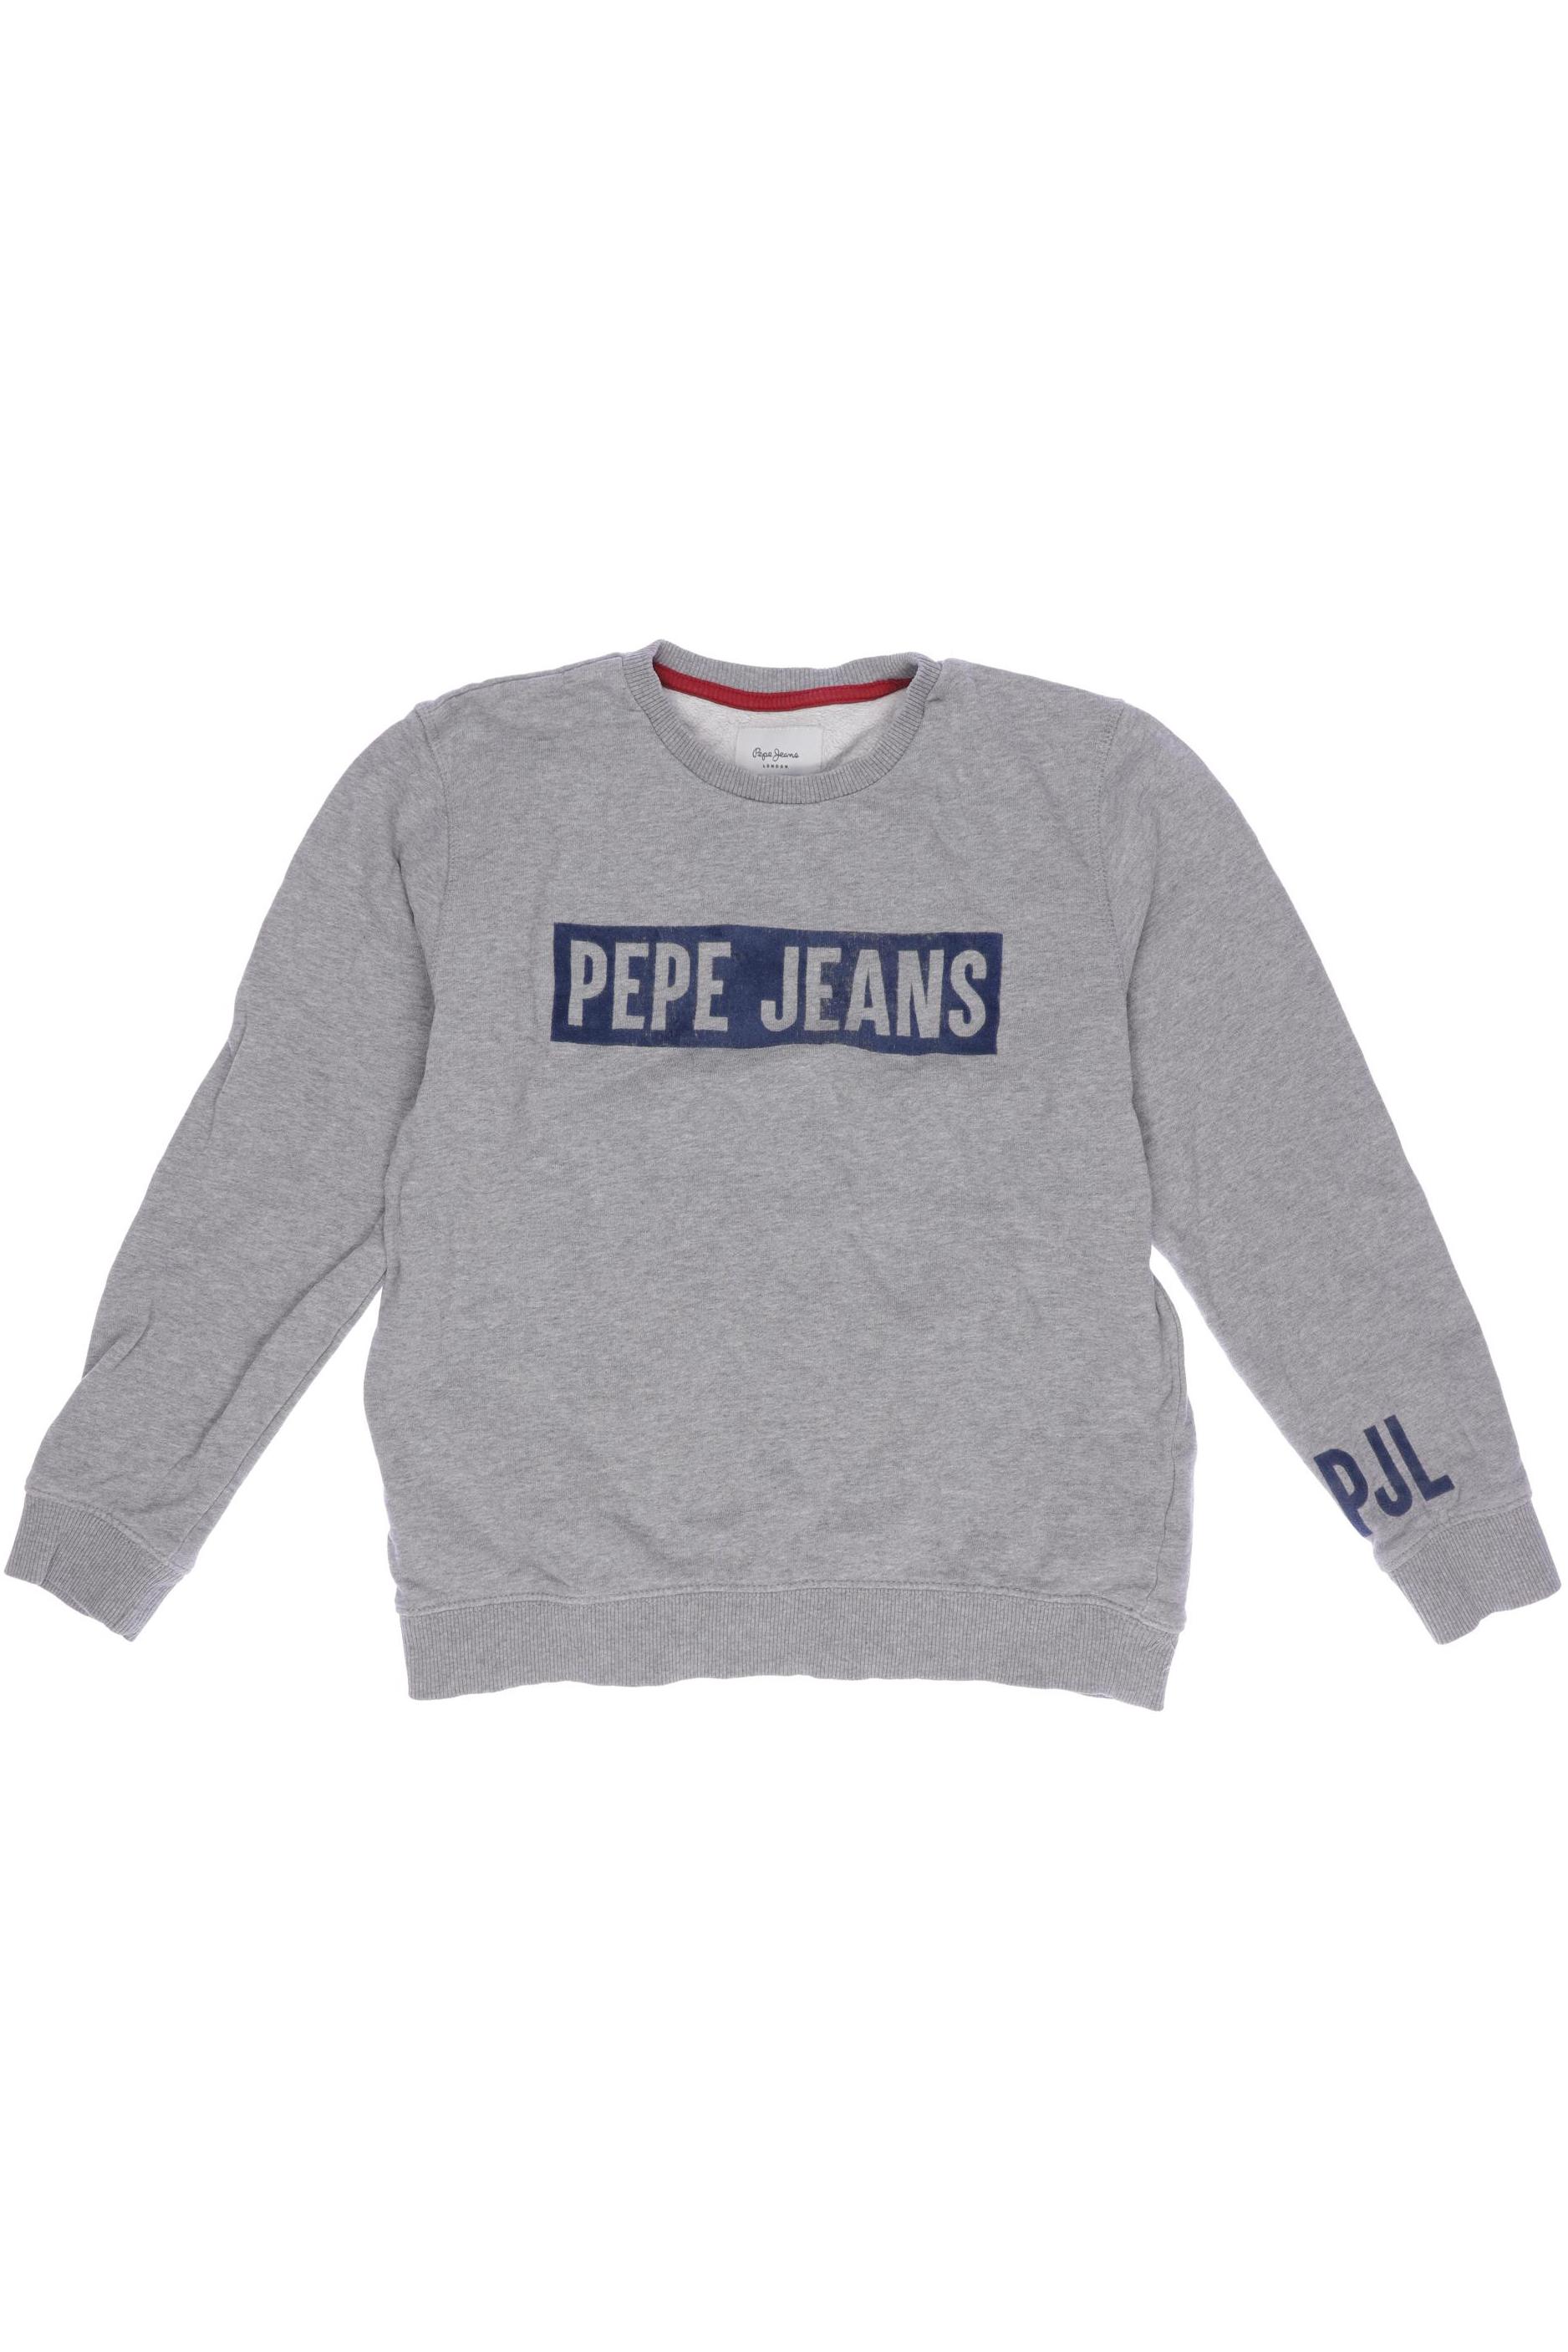 Pepe Jeans Herren Hoodies & Sweater, grau, Gr. 152 von Pepe Jeans